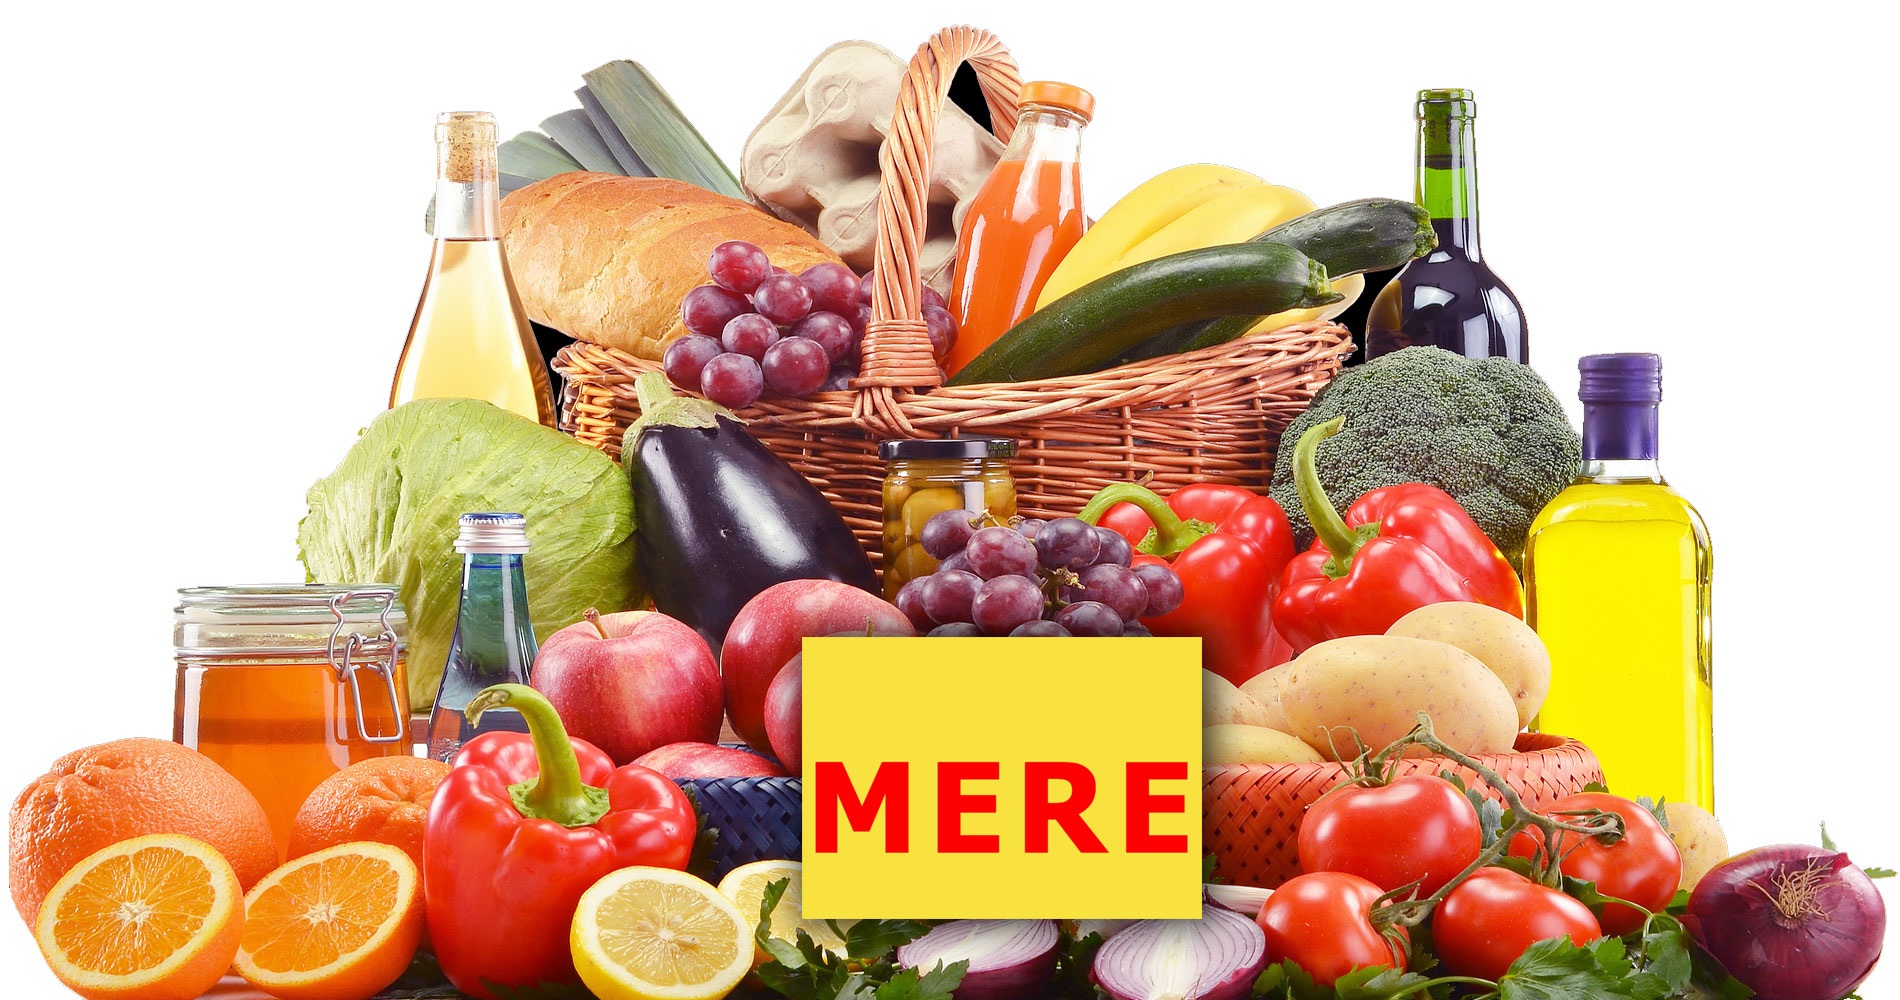 voir les magasins de discount alimentaire MERE en France